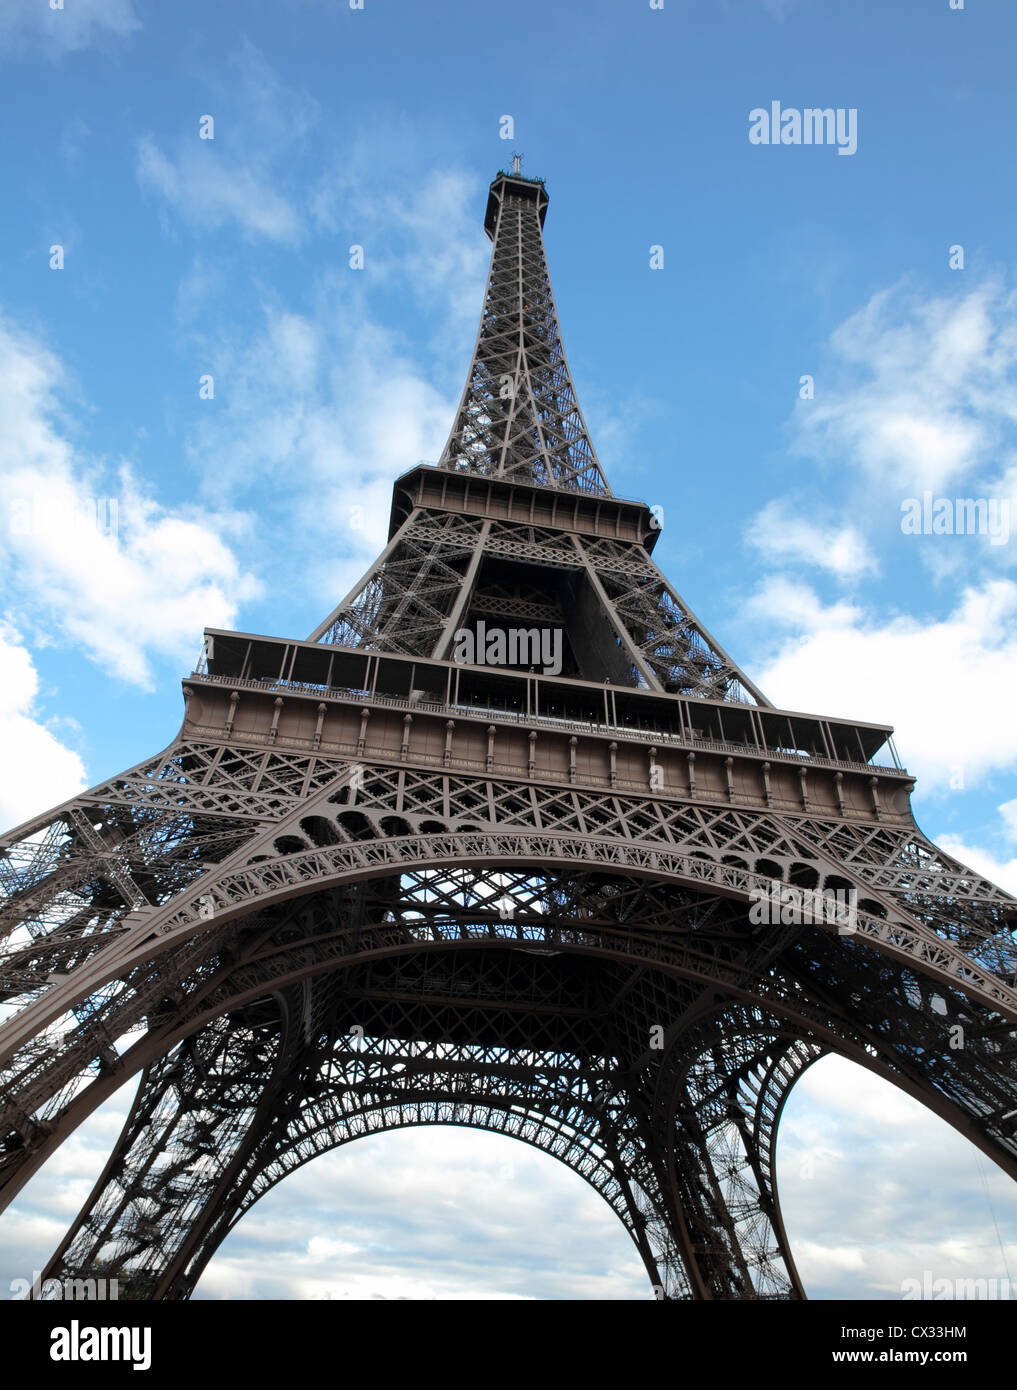 La tour Eiffel à Paris prise de vue au grand angle Banque D'Images